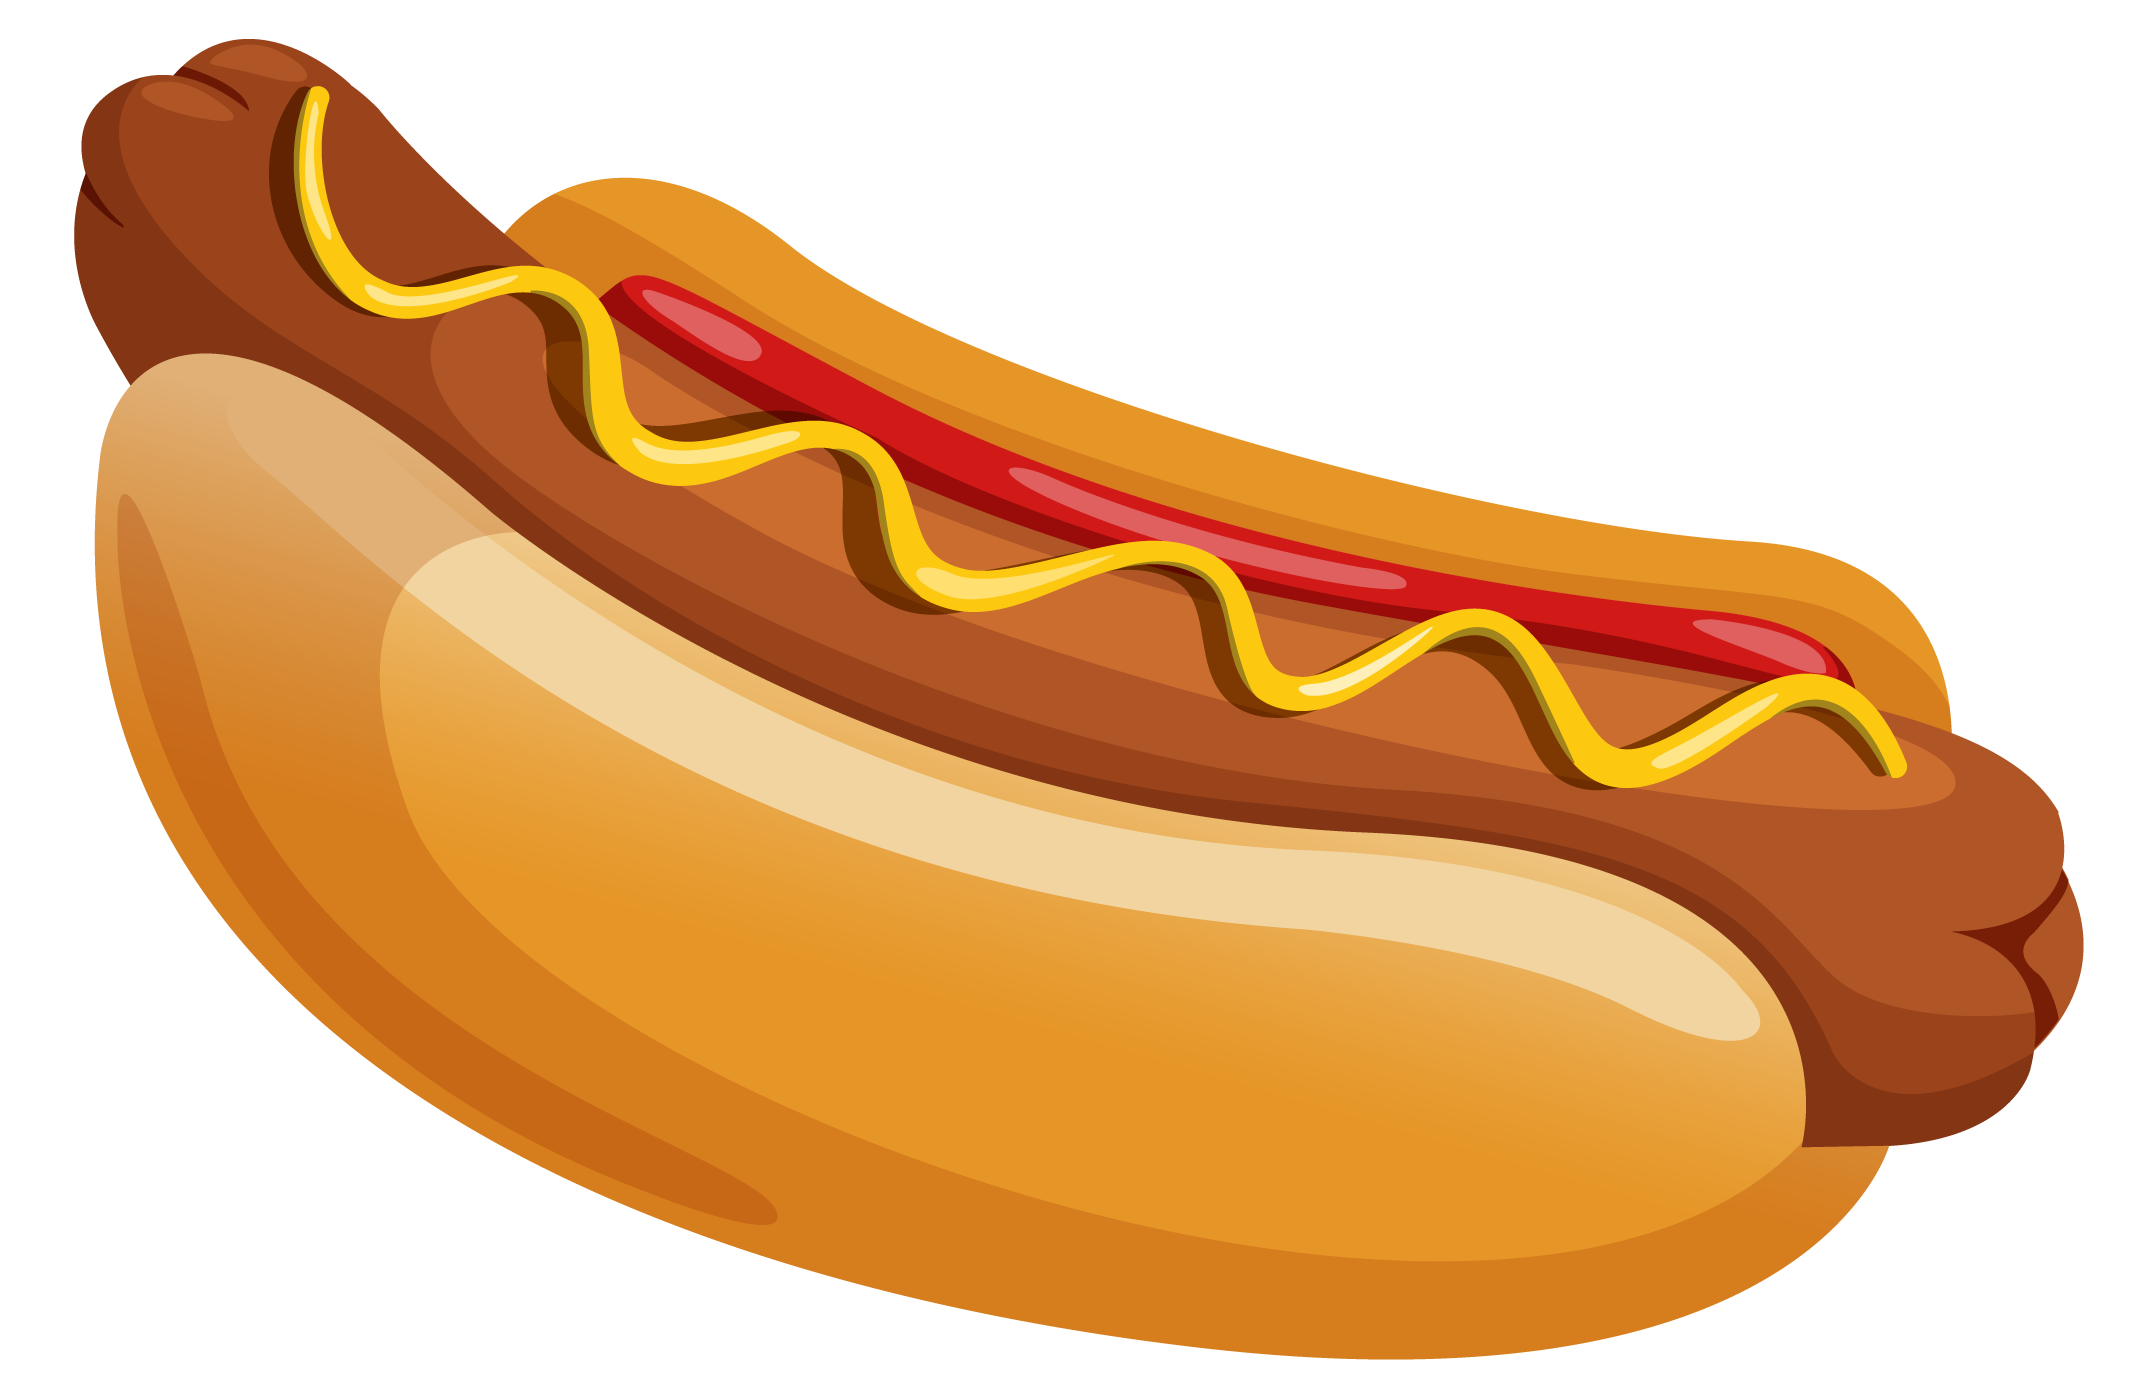 Hotdog burger hotdog